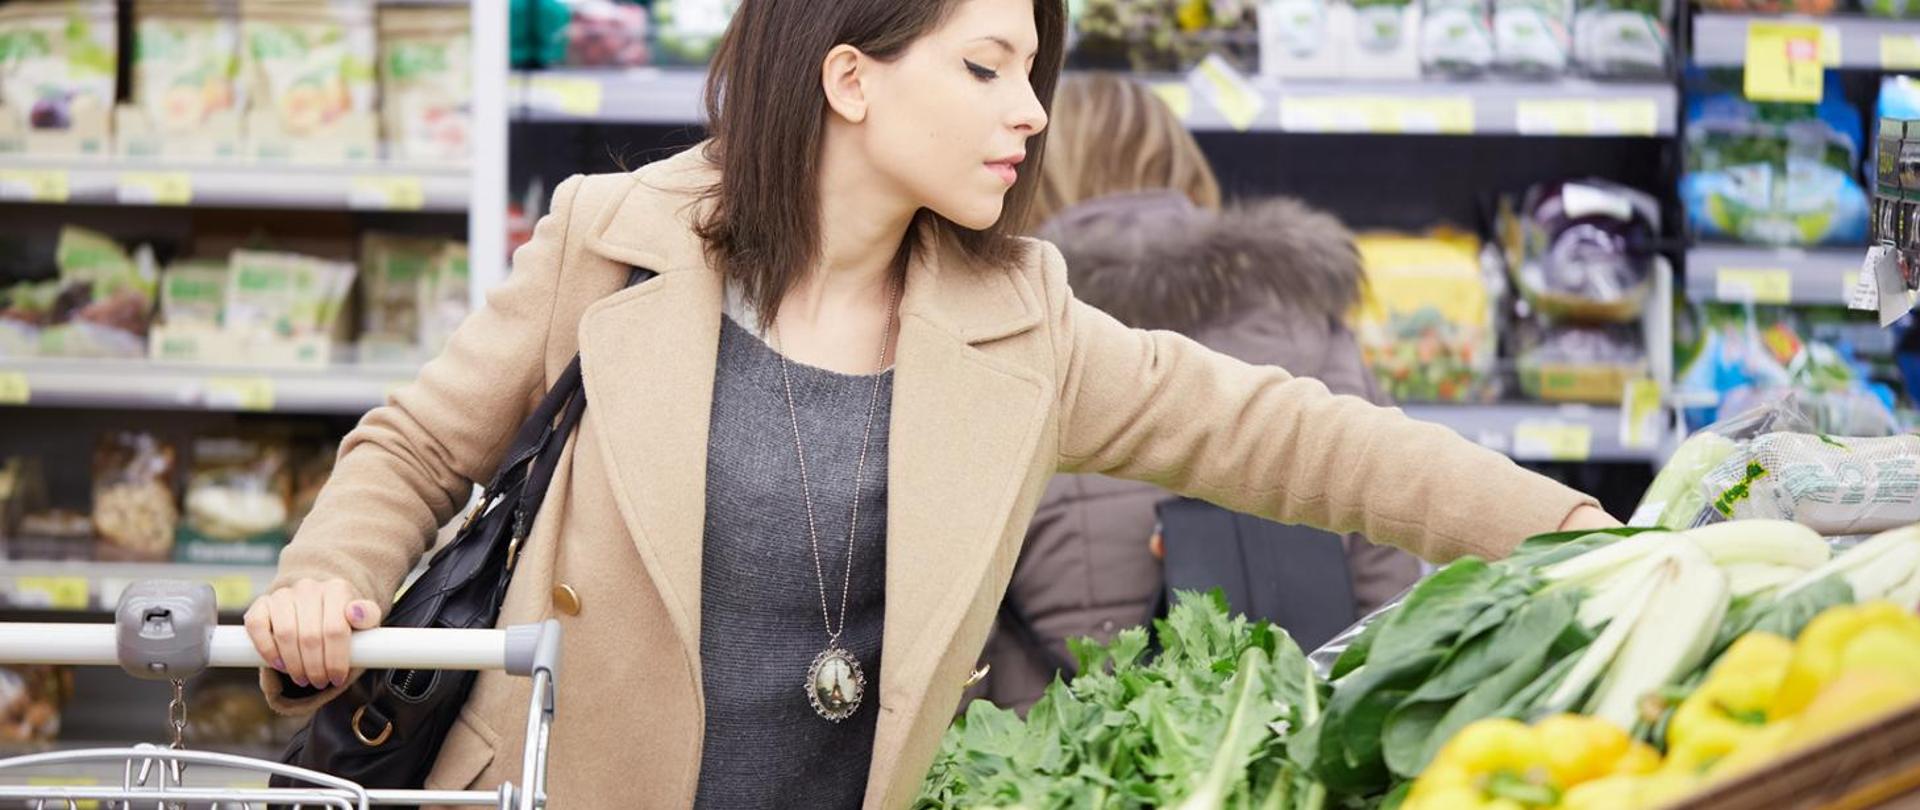 Kobieta przy stoisku warzywnym wybiera produkty do kosza zakupowego.